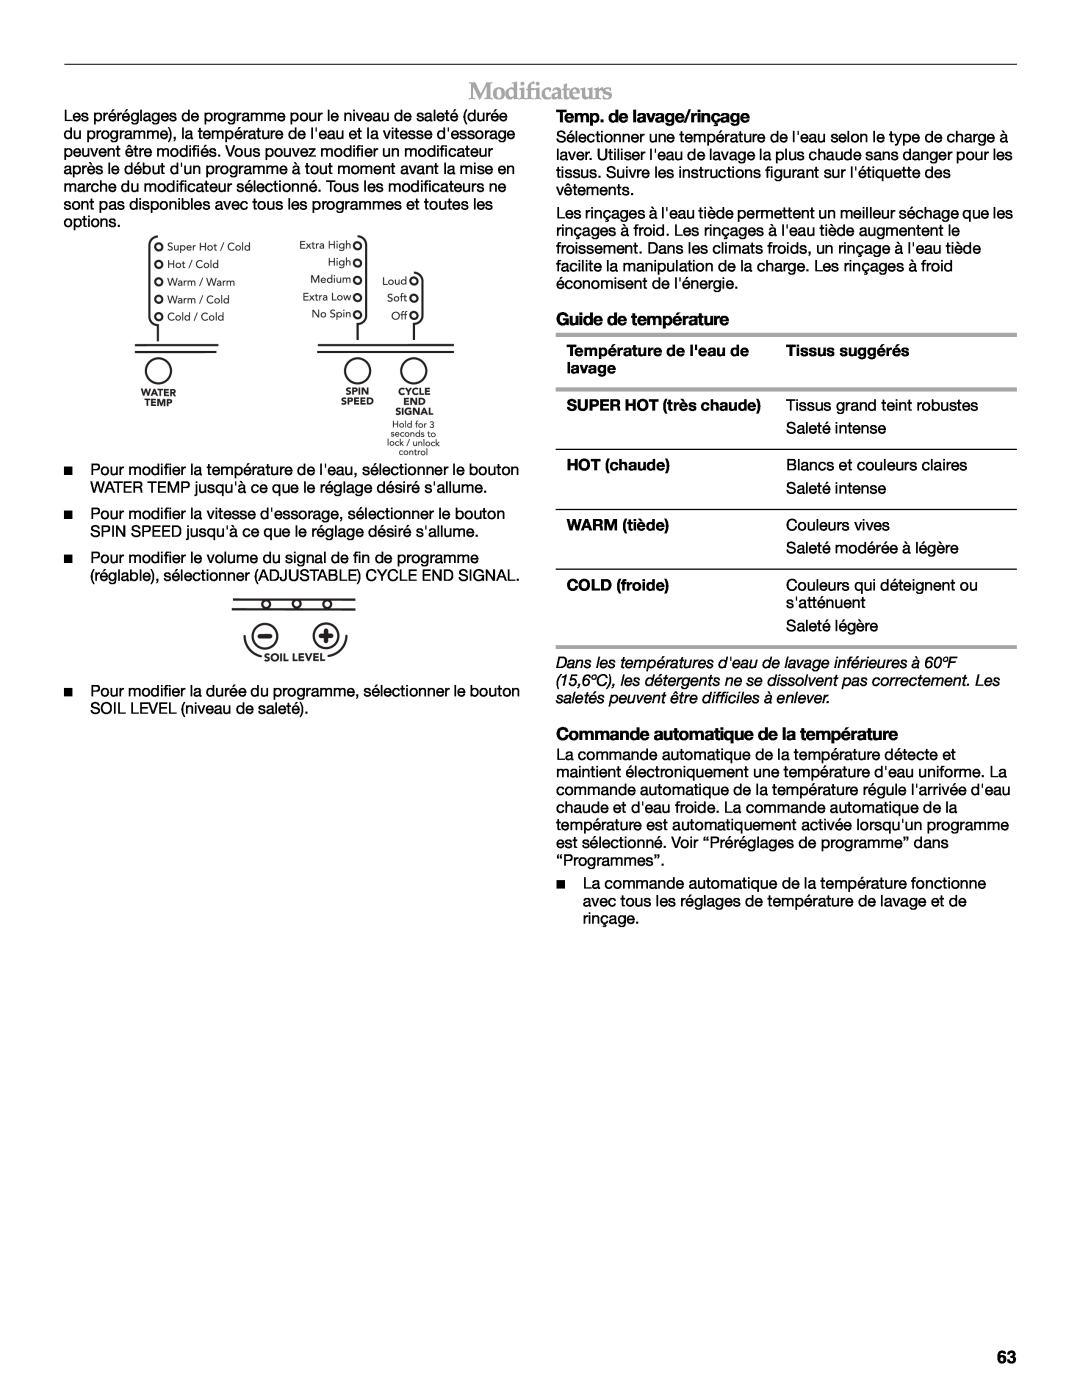 Maytag 8182969 manual Modificateurs, Temp. de lavage/rinçage, Guide de température, Commande automatique de la température 